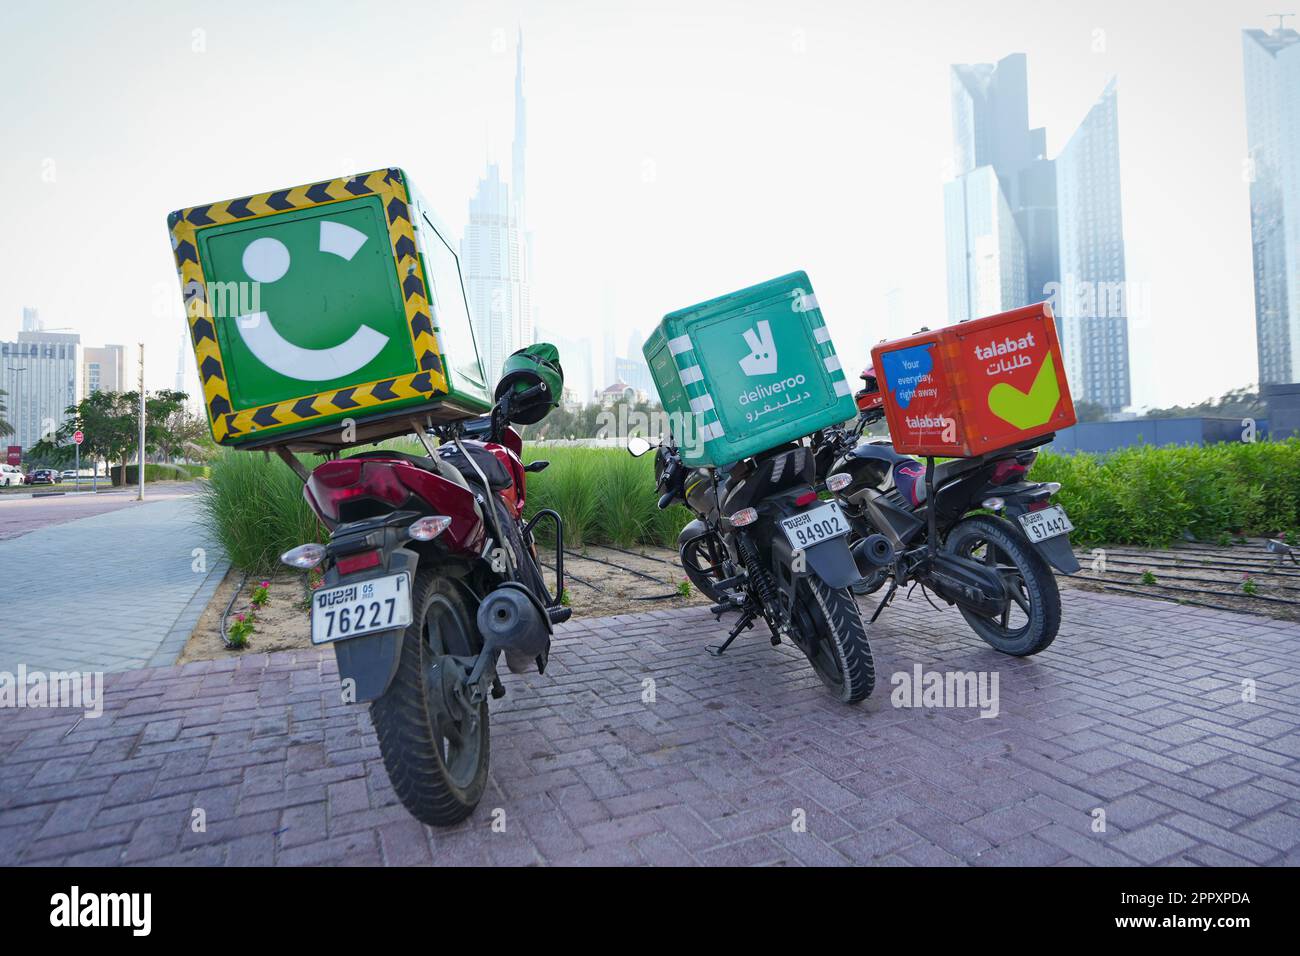 Livraison de nourriture pour motos au parking. Dubaï, Émirats arabes Unis - avril 2023 Banque D'Images